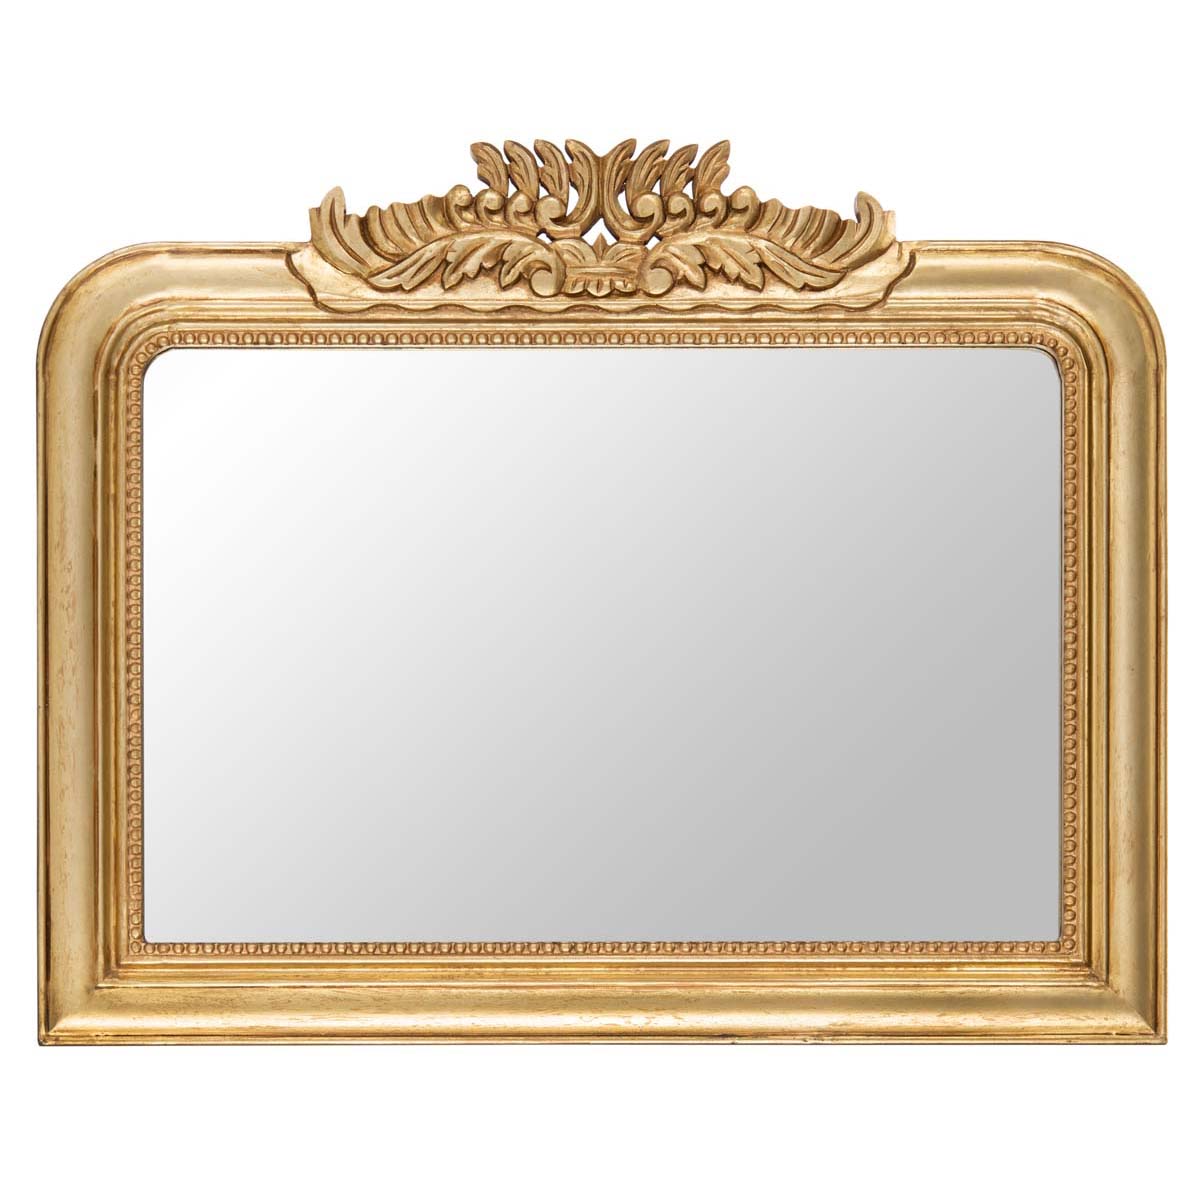 Safavieh Parston Mirror , MRR5001 - Gold